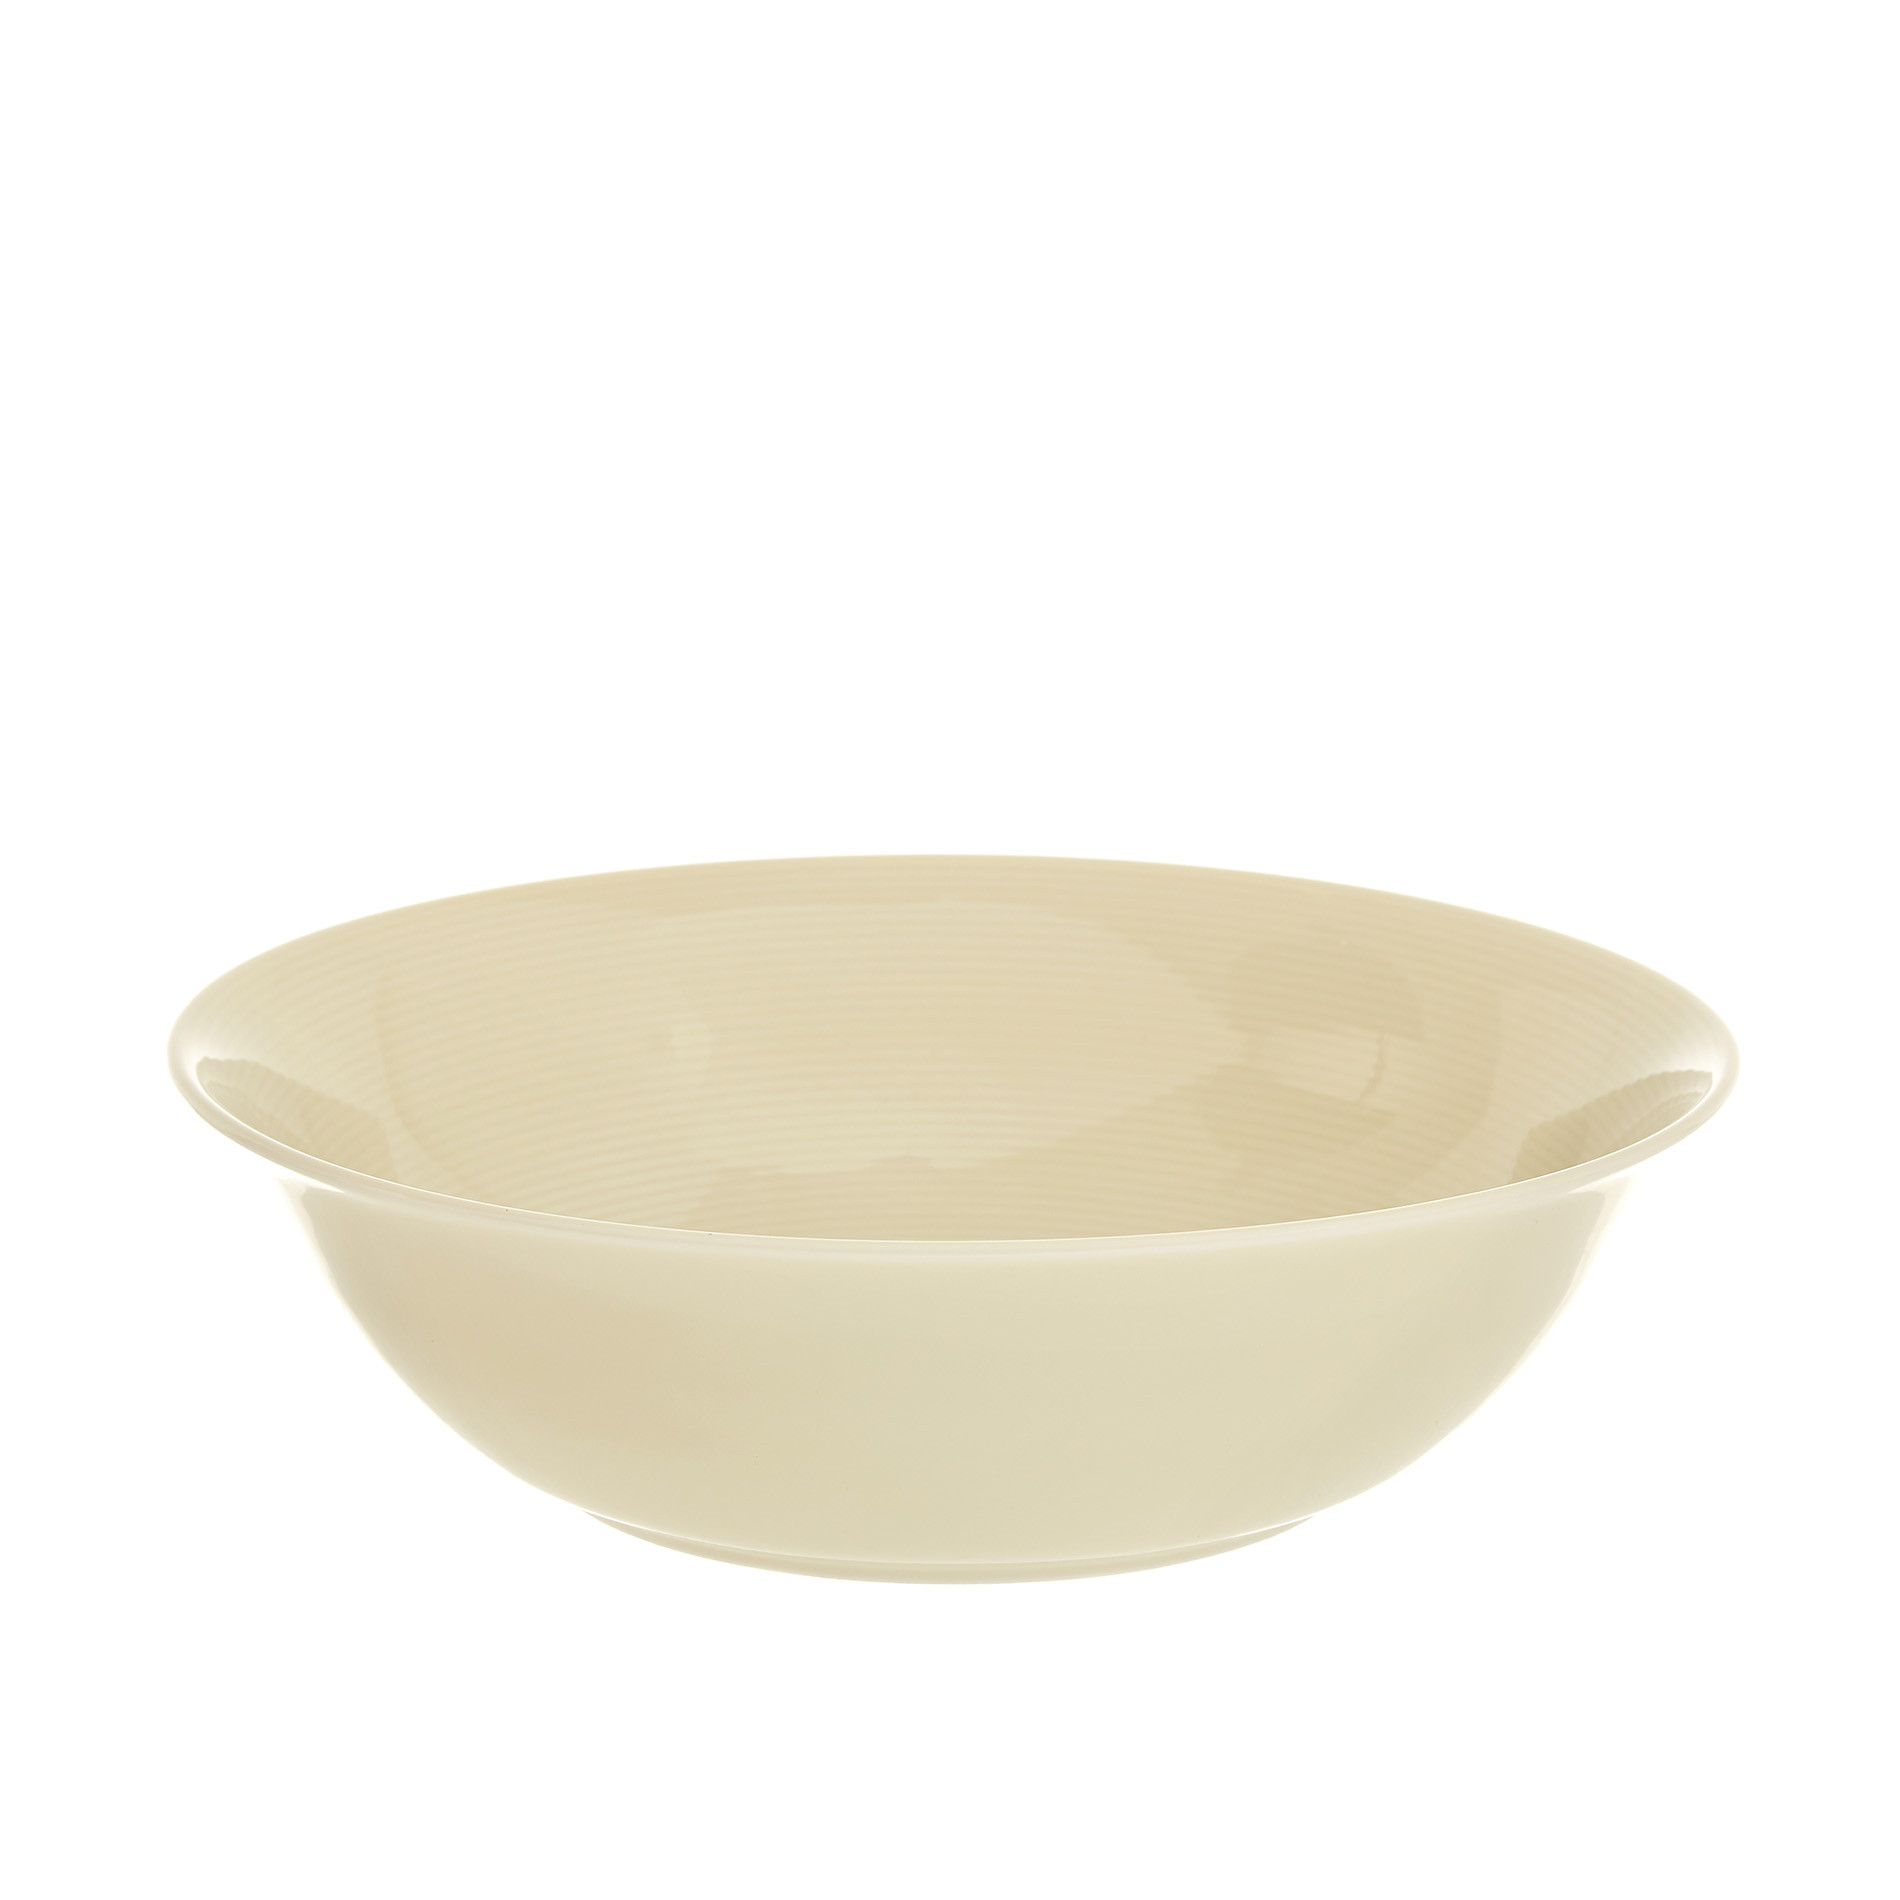 Charme porcelain salad bowl, Beige, large image number 0